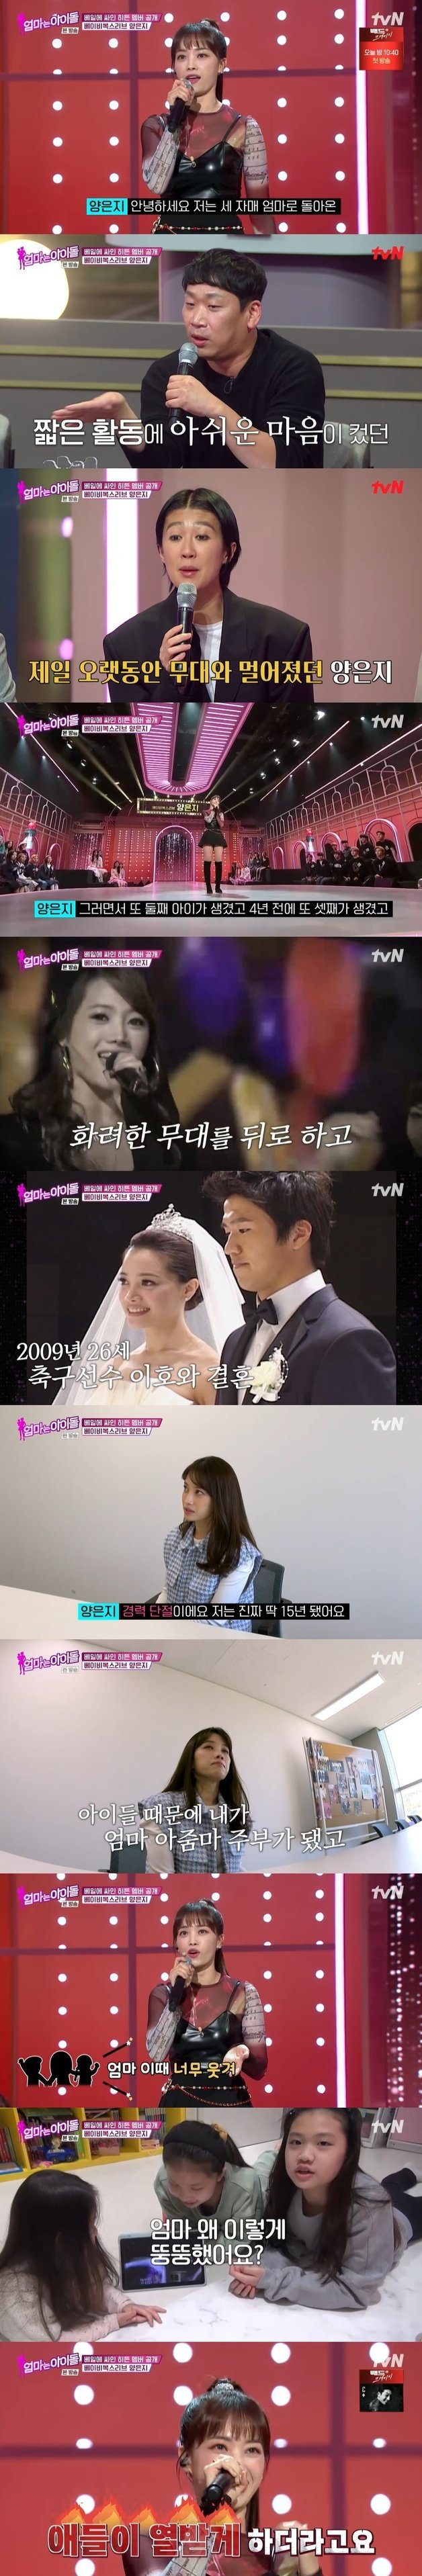 tvN ‘엄마는 아이돌’ 캡처 © 뉴스1